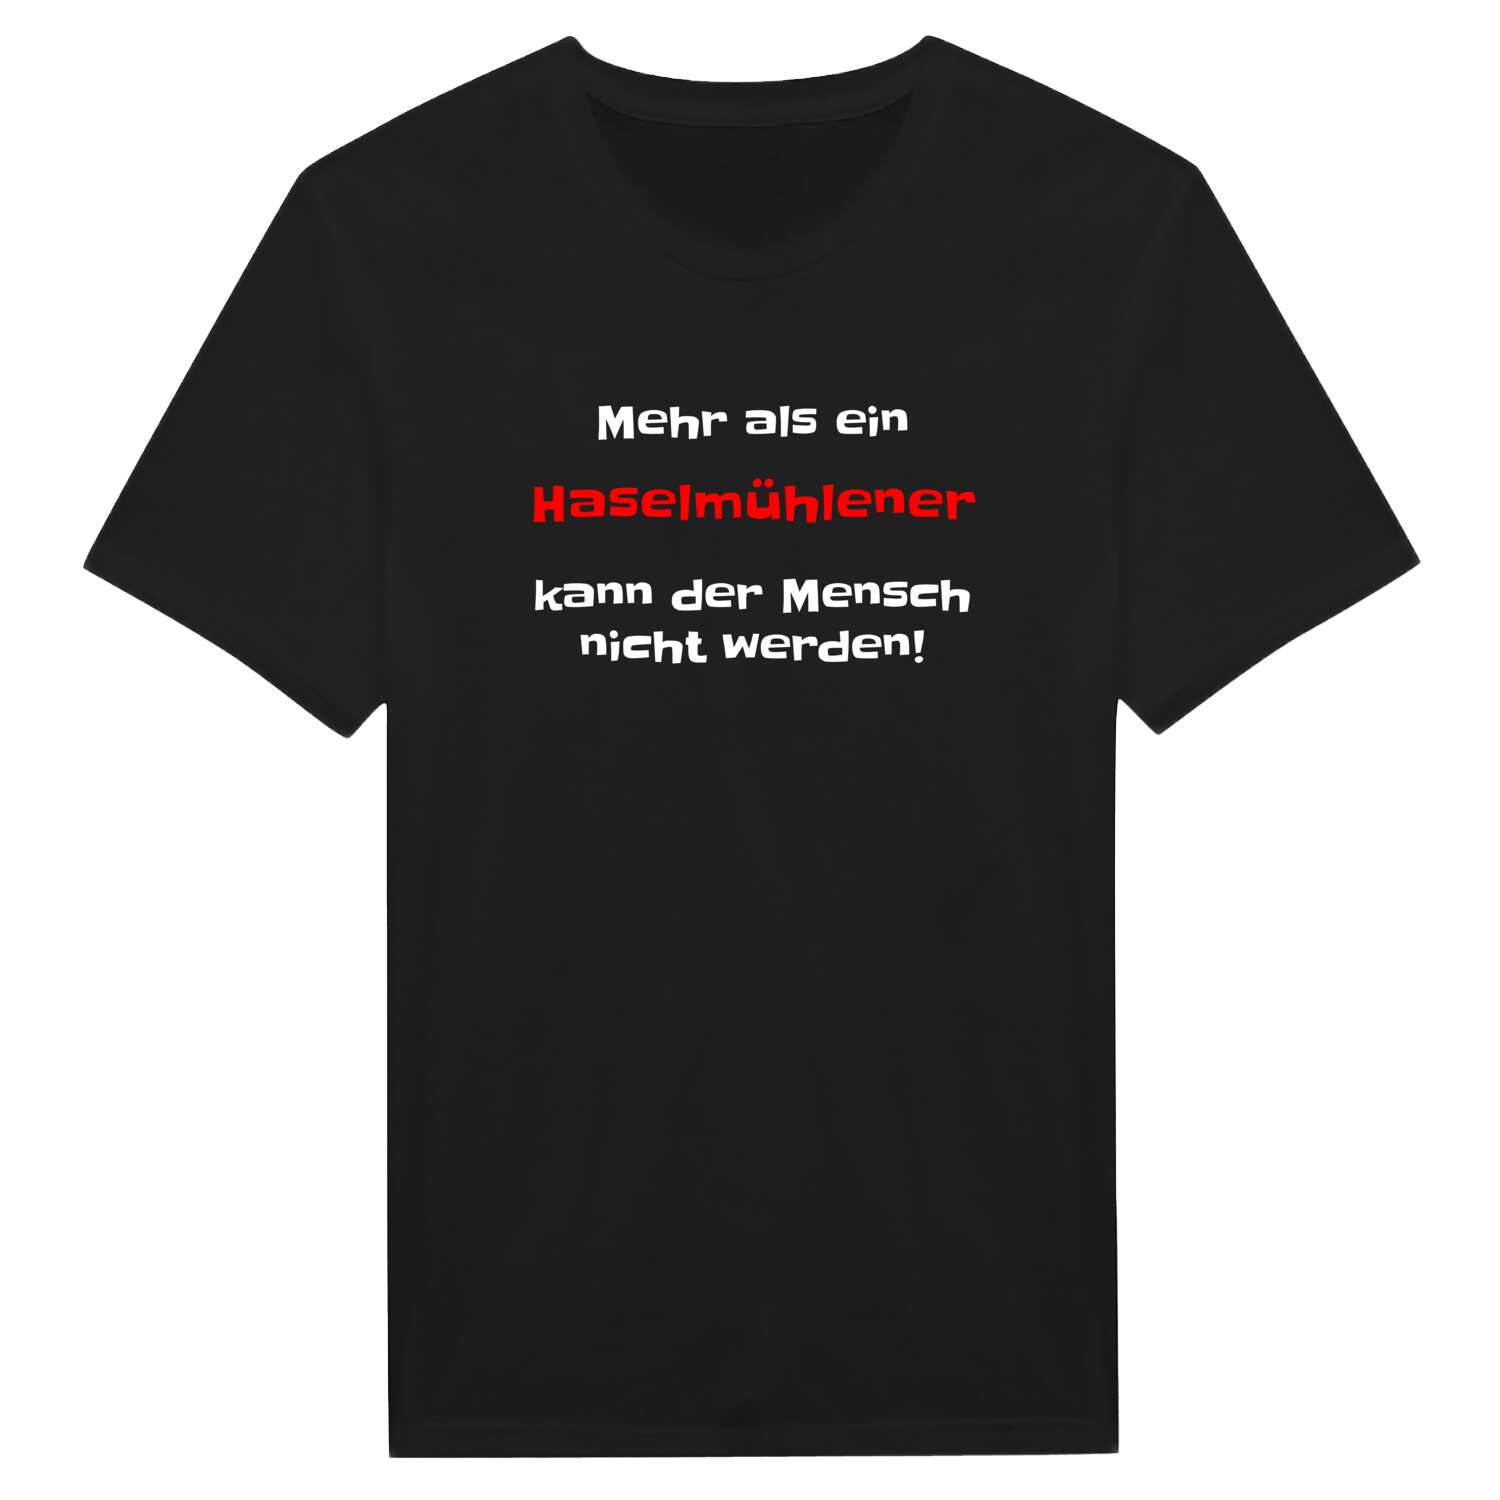 Haselmühle T-Shirt »Mehr als ein«